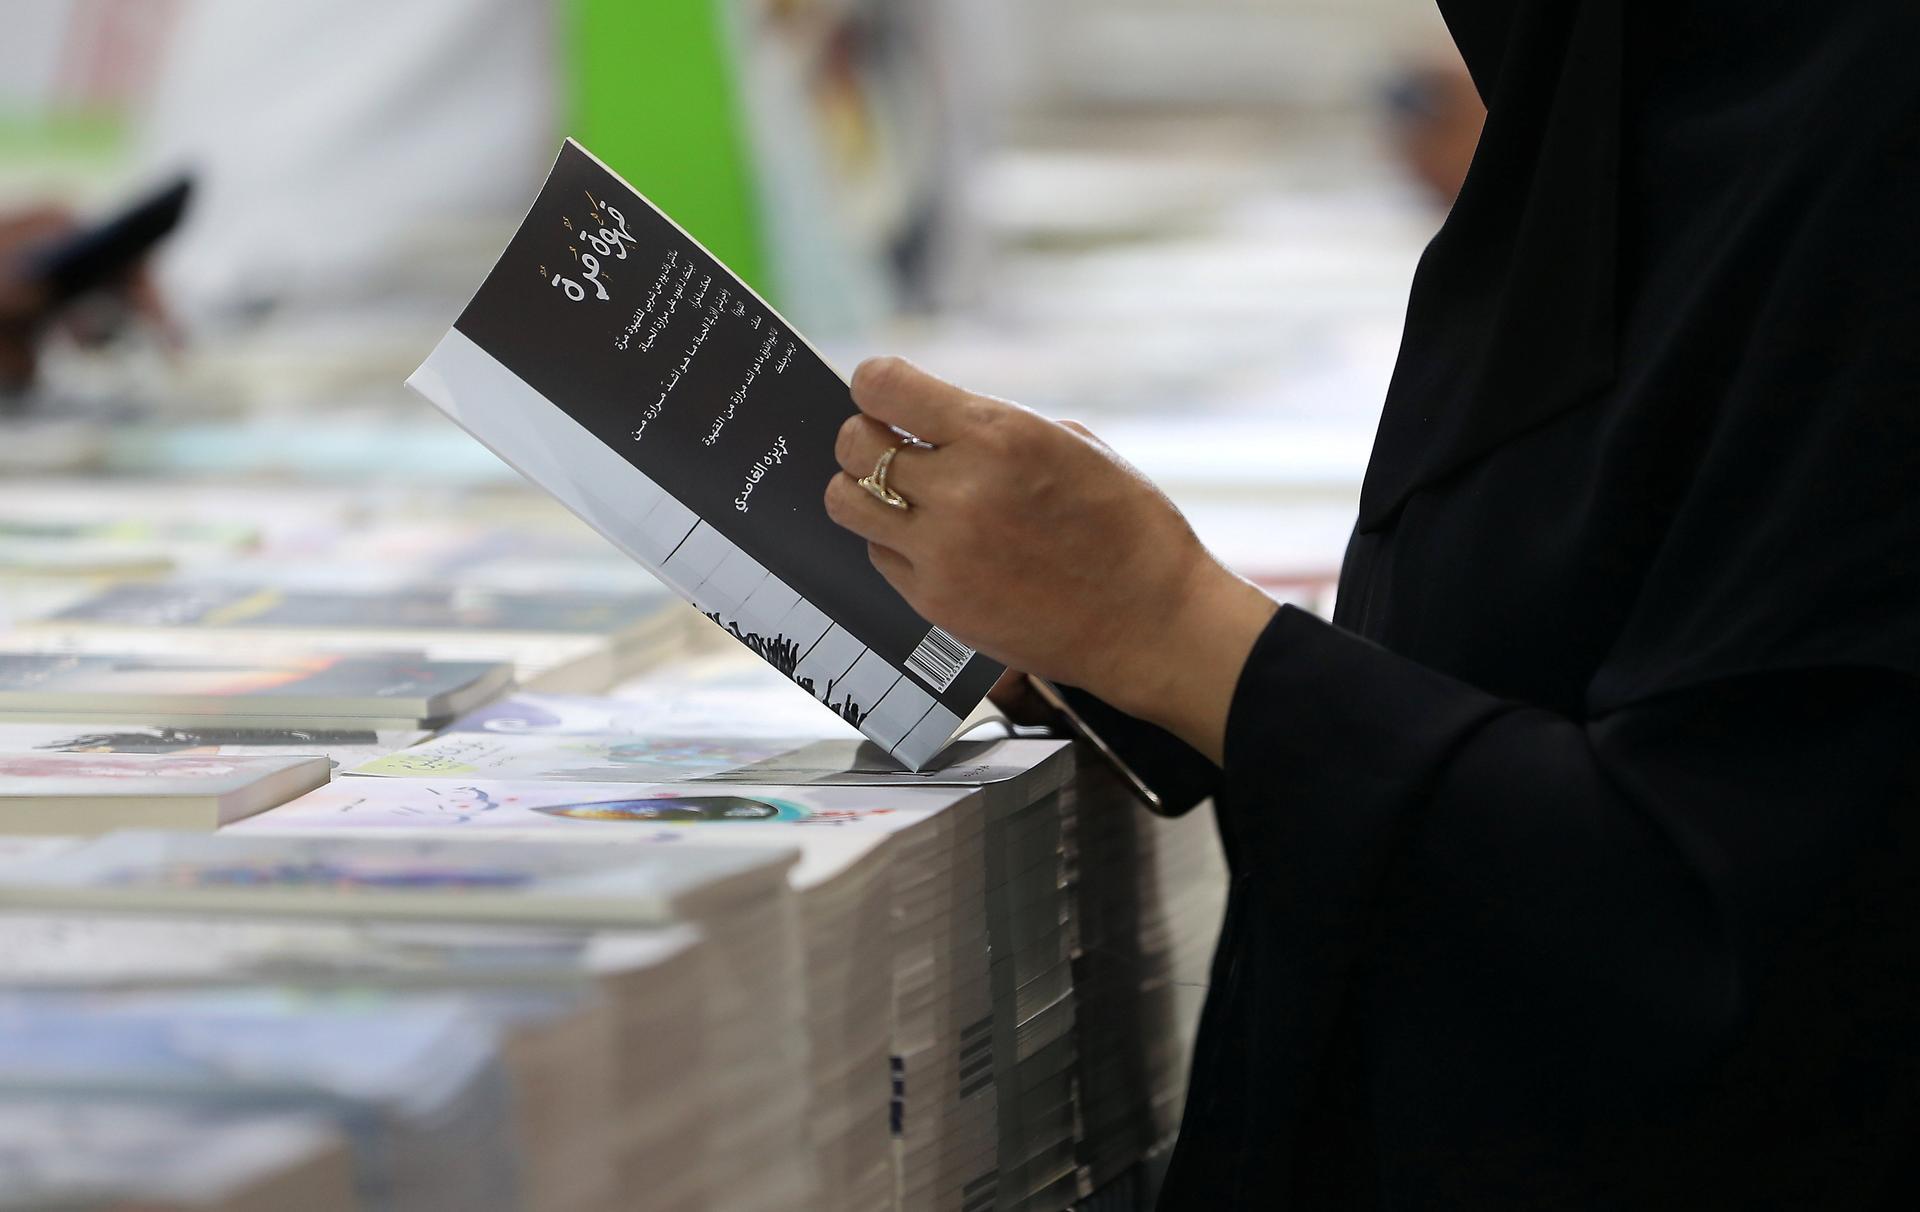 Book Fair in Abu Dhabi